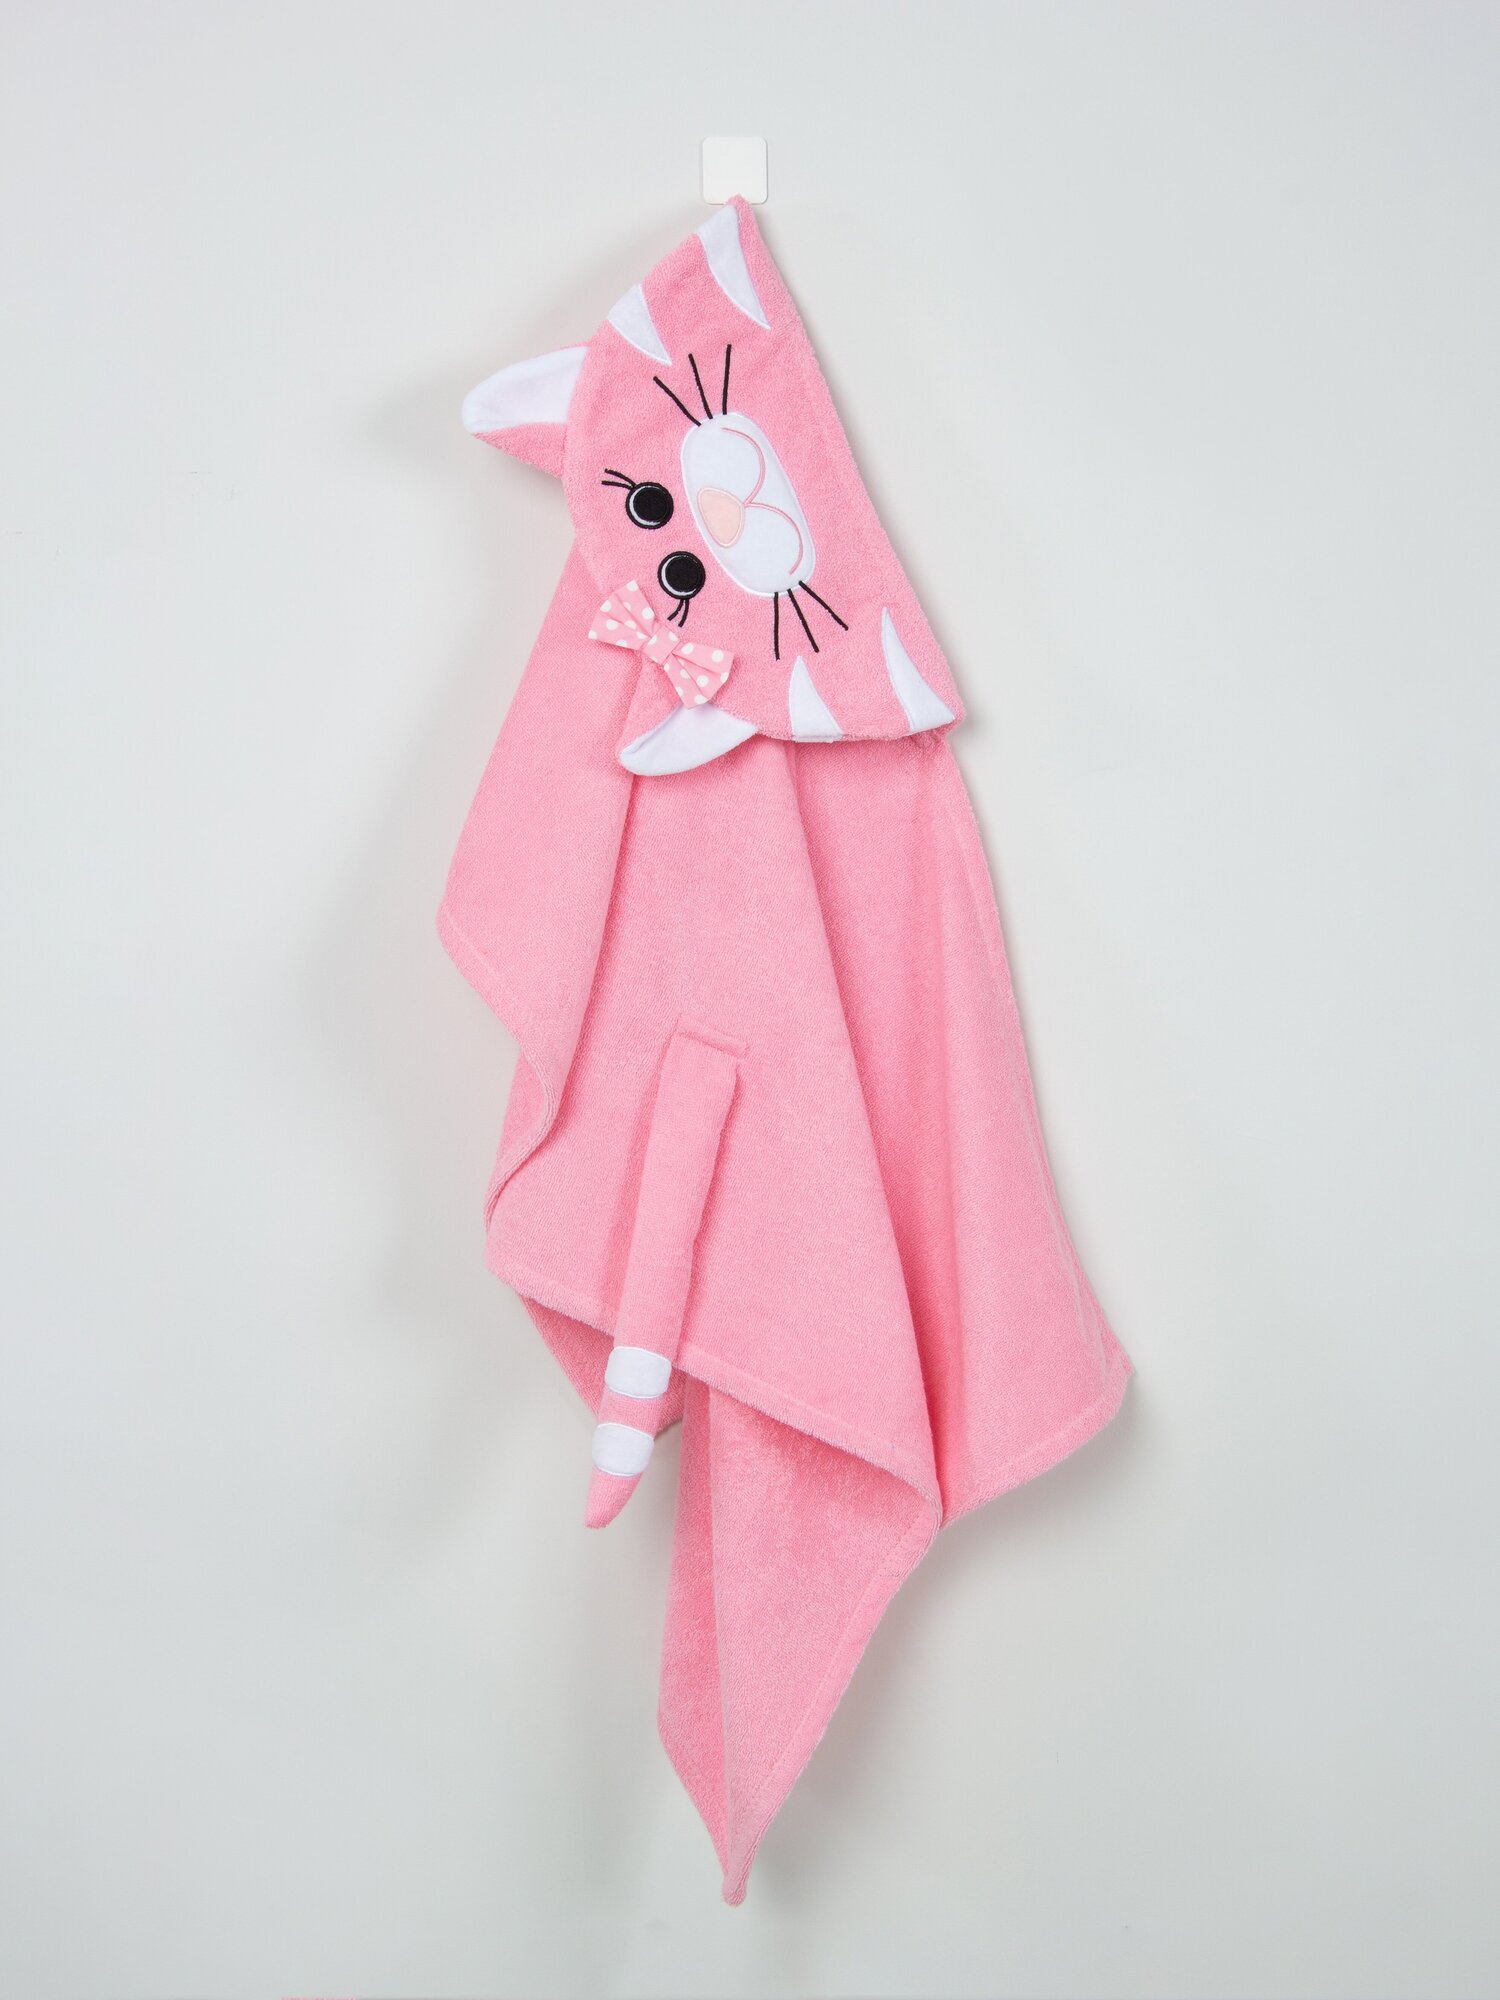 Полотенце банное с капюшоном Fluffy Bunny Кошка, цвет Светло-розовый, Размер 122Х68см, 100% хлопок, 380гр/м2